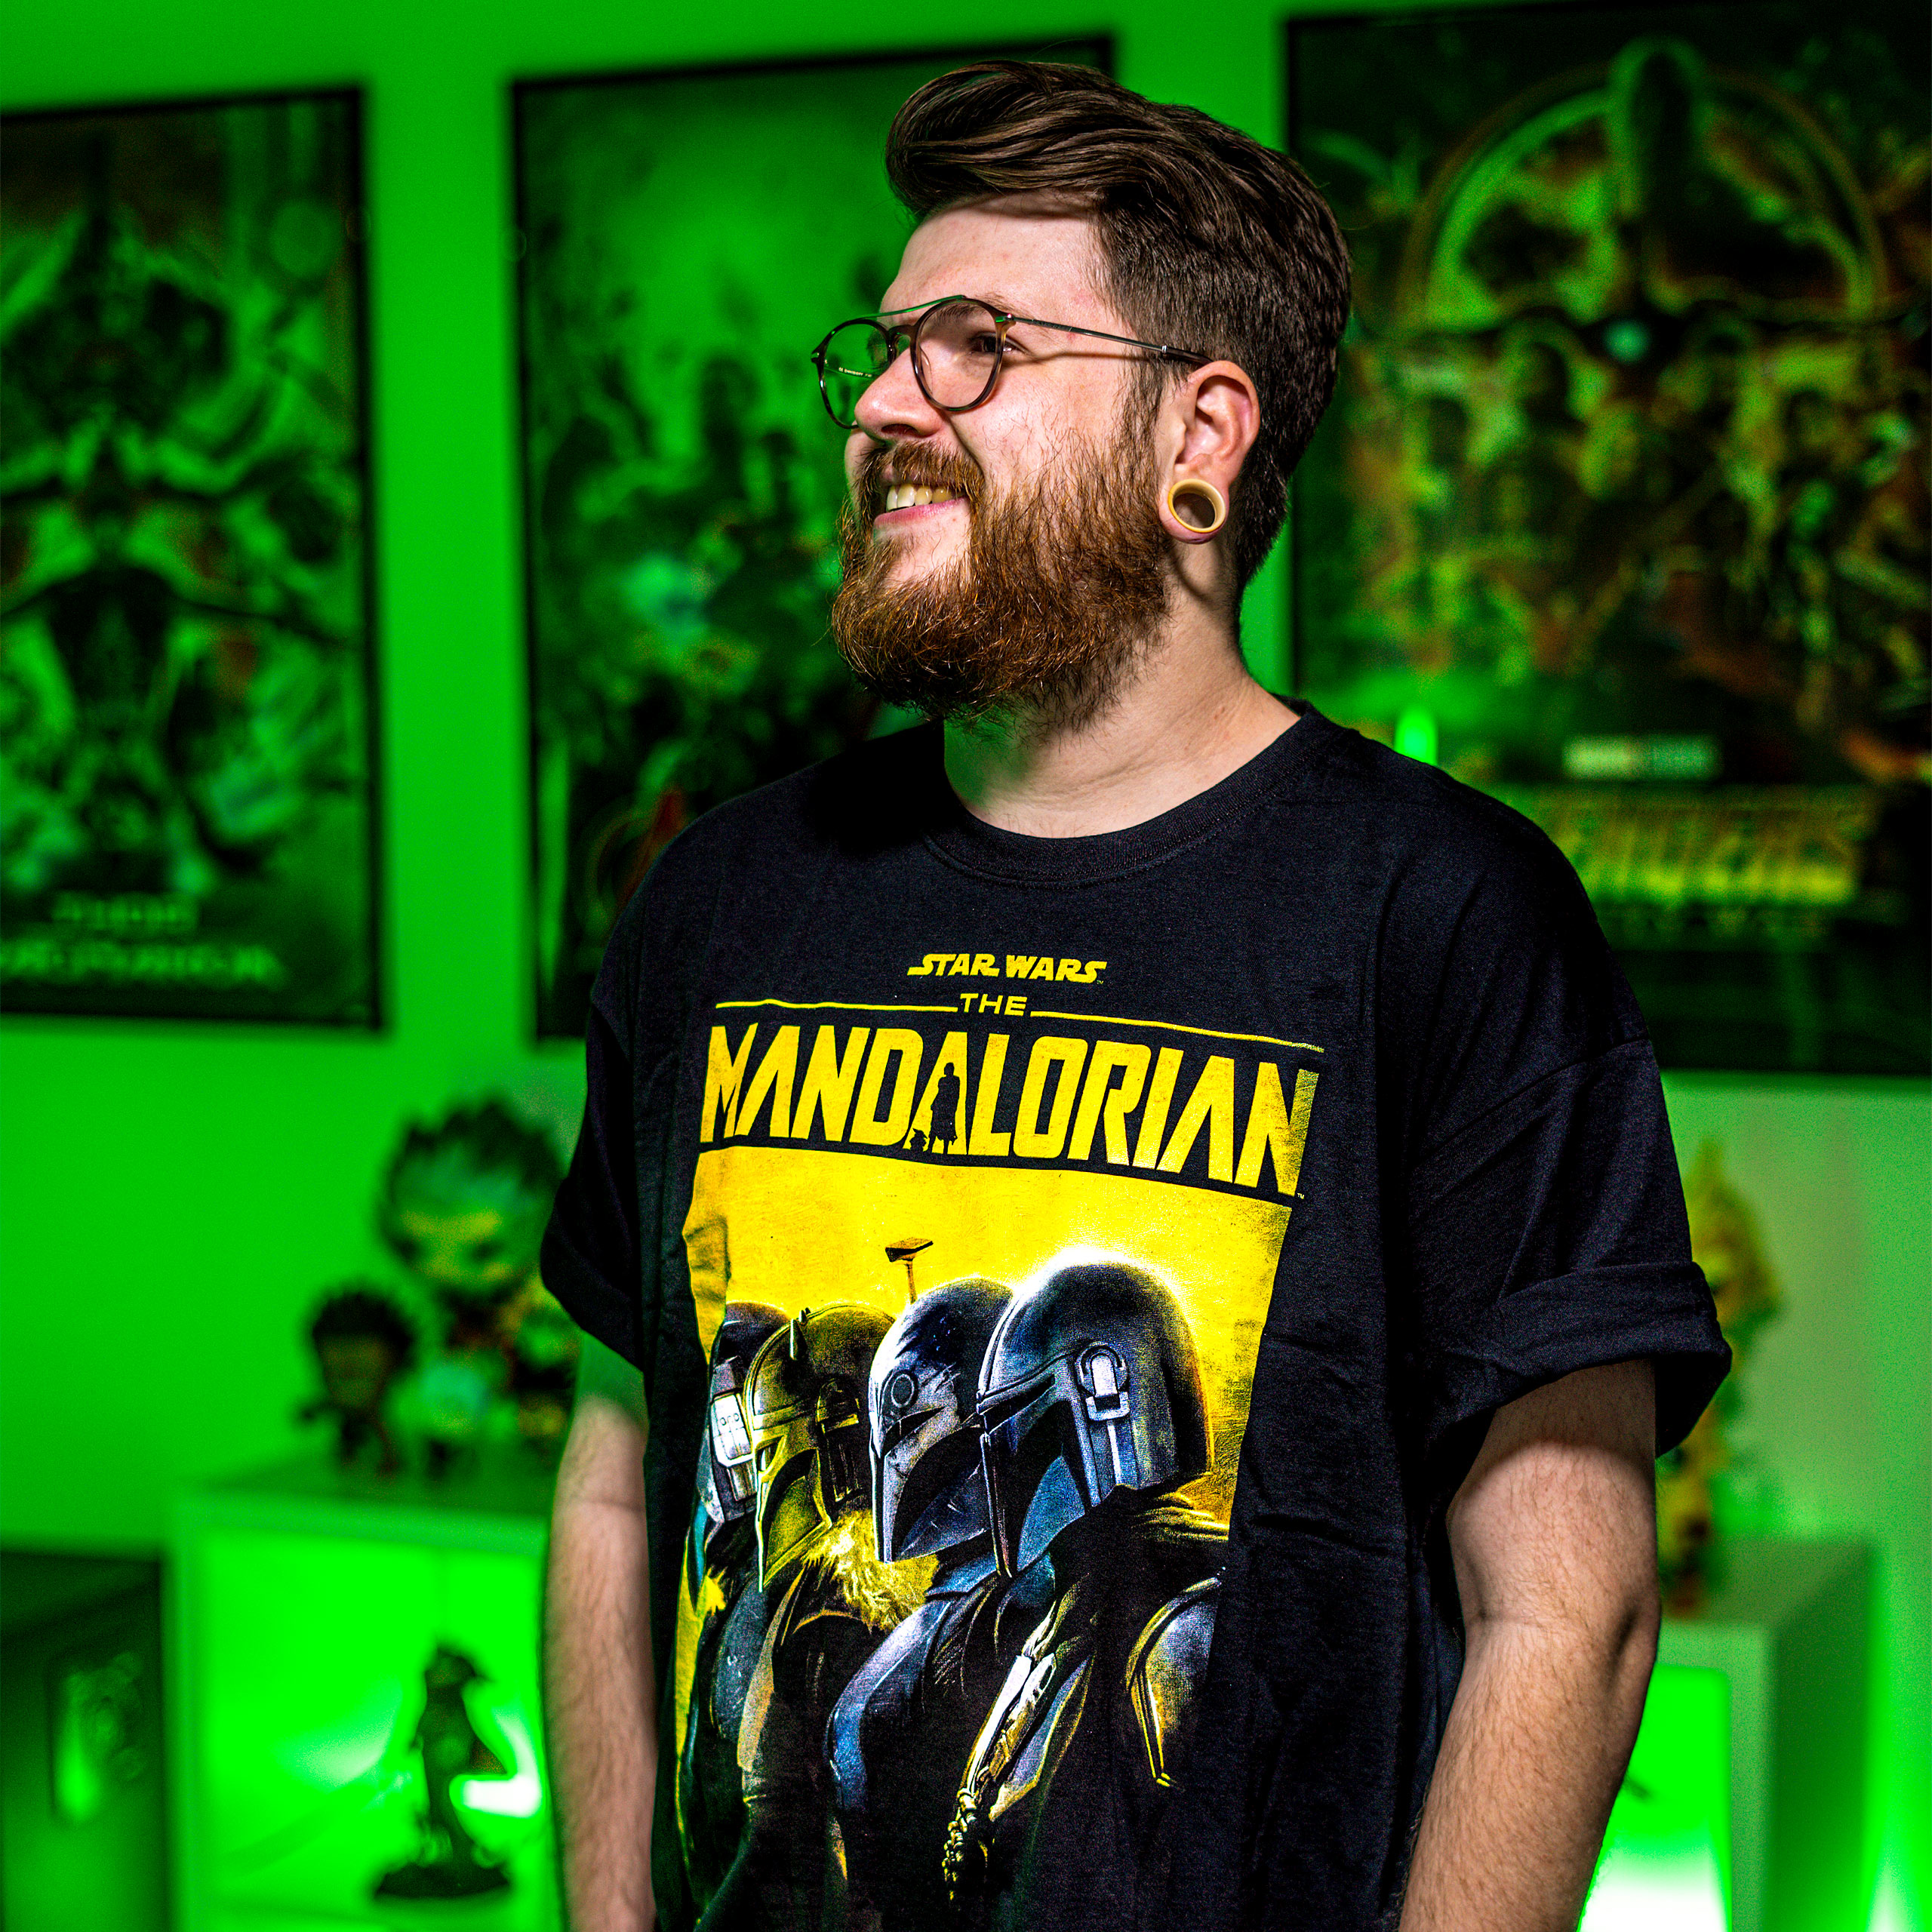 Mandalorian Creed T-Shirt black - Star Wars The Mandalorian